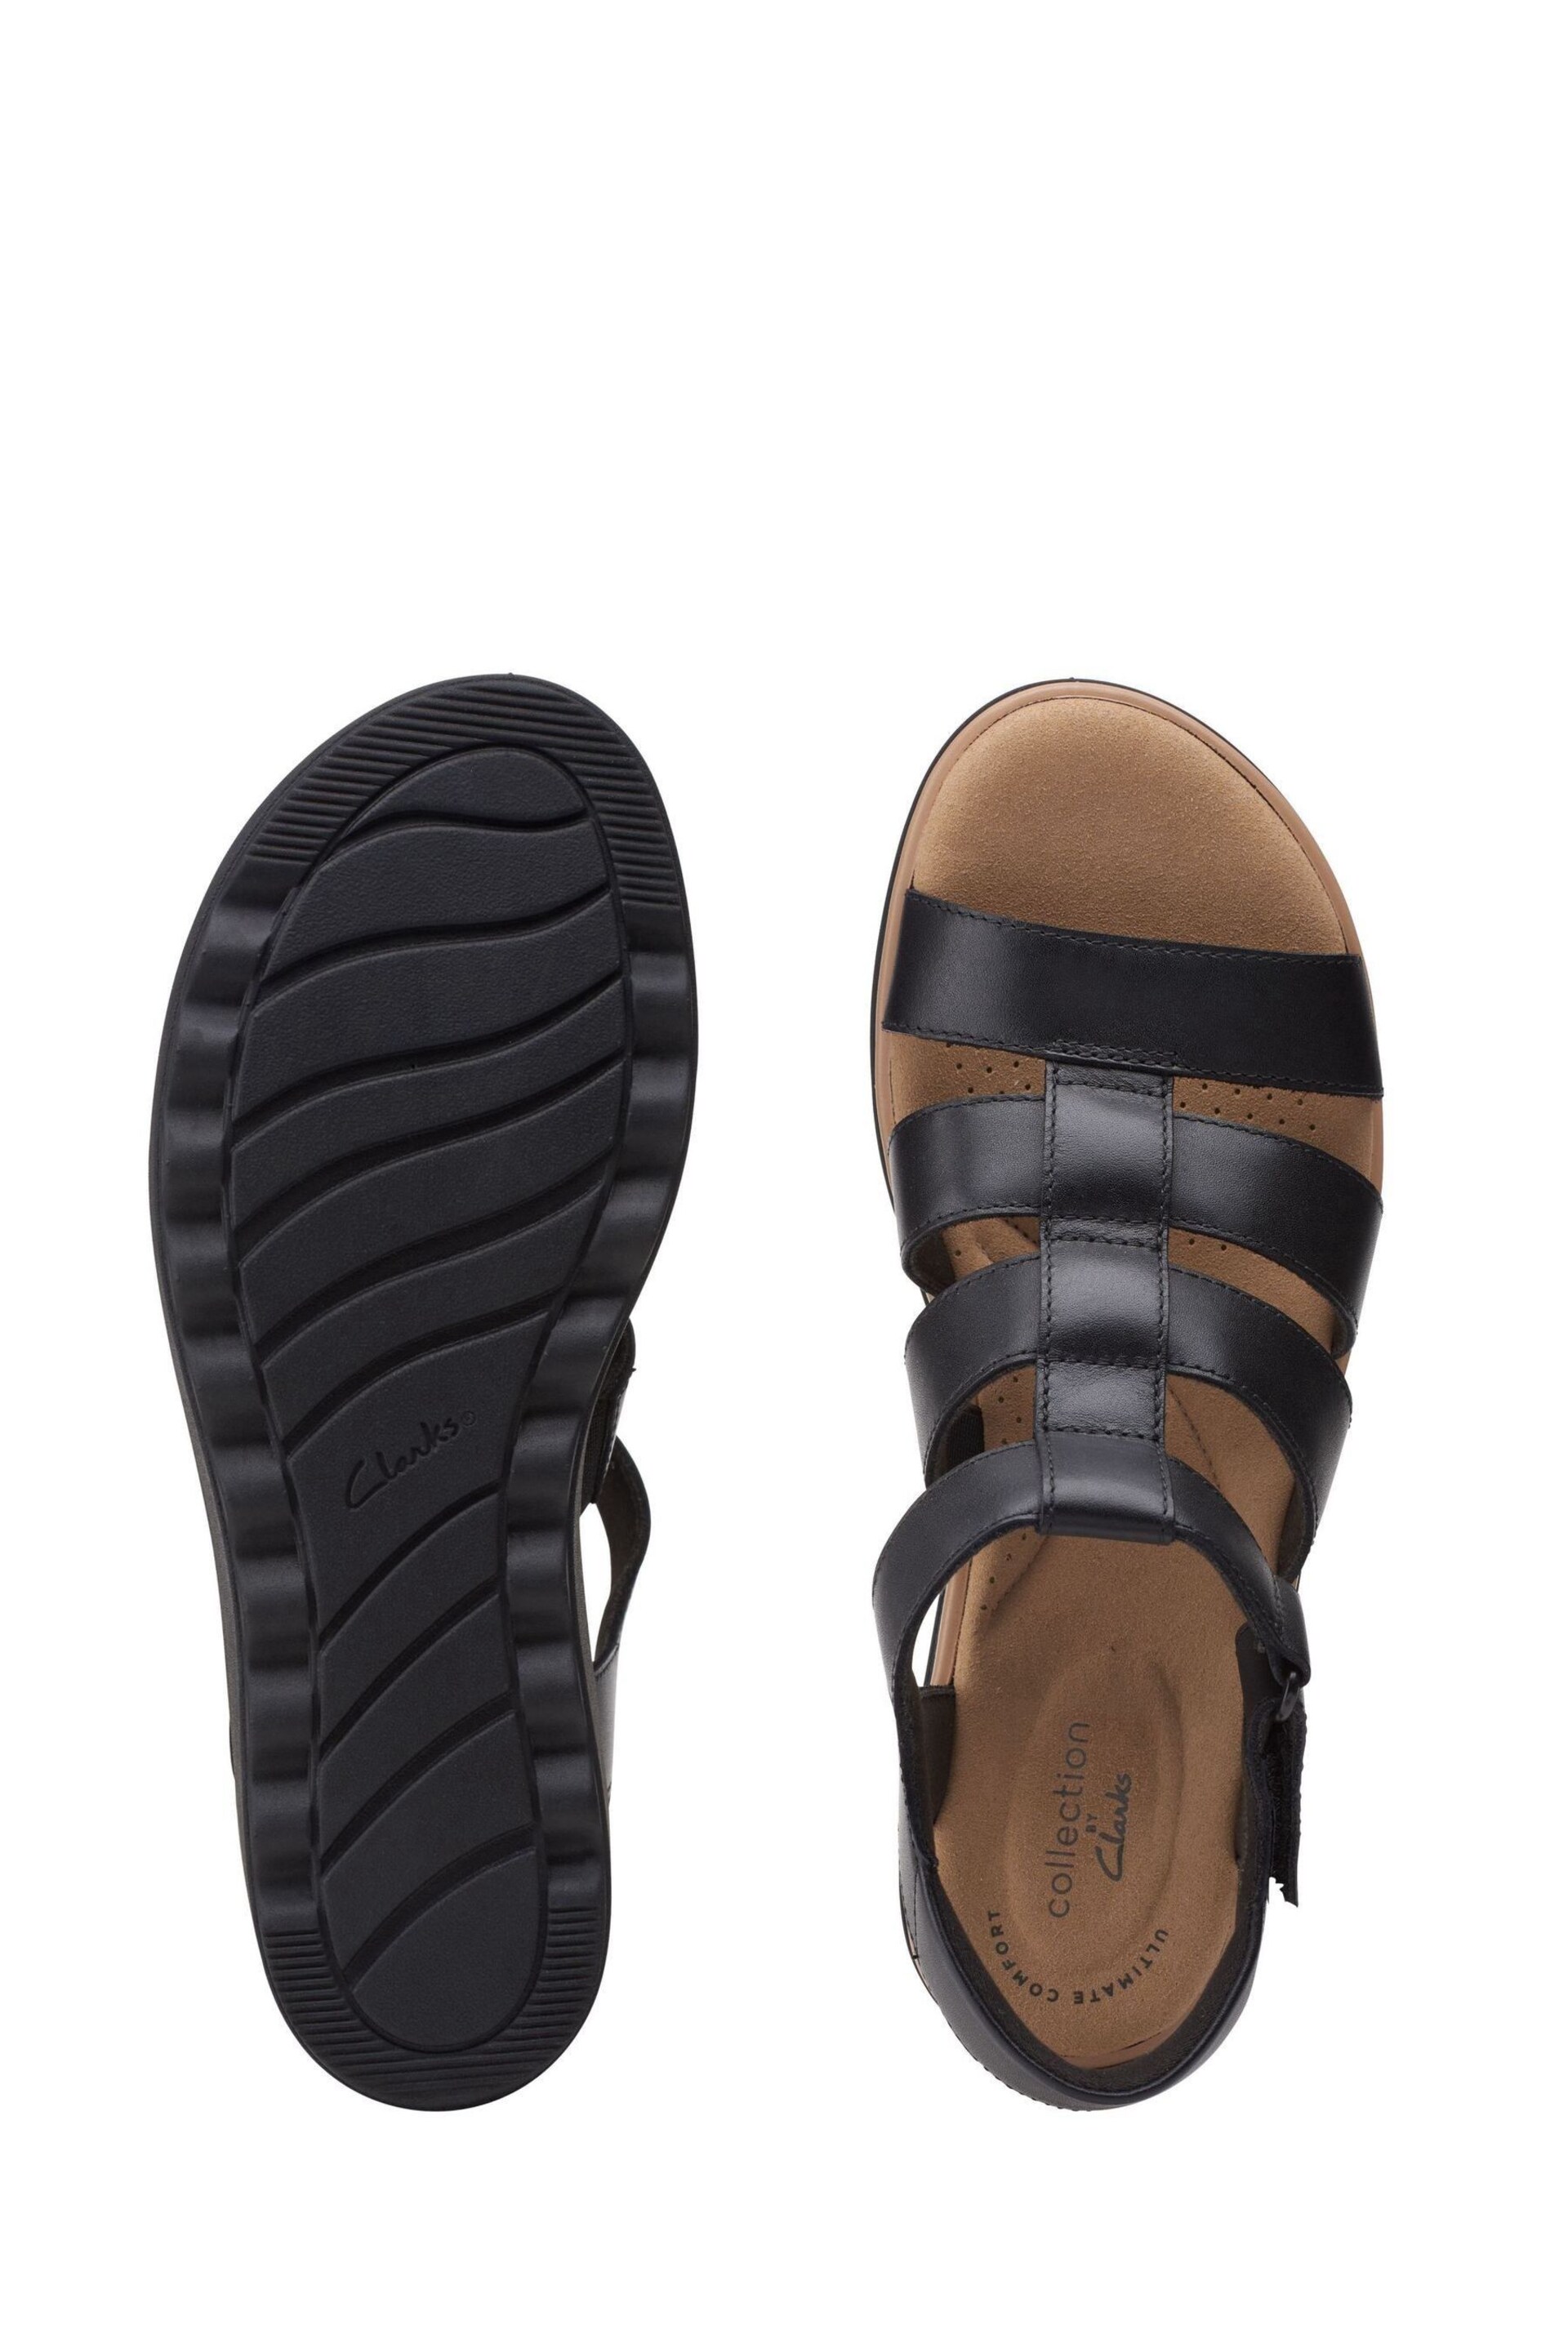 Clarks Black Leather Jillian Quartz Sandals - Image 7 of 7